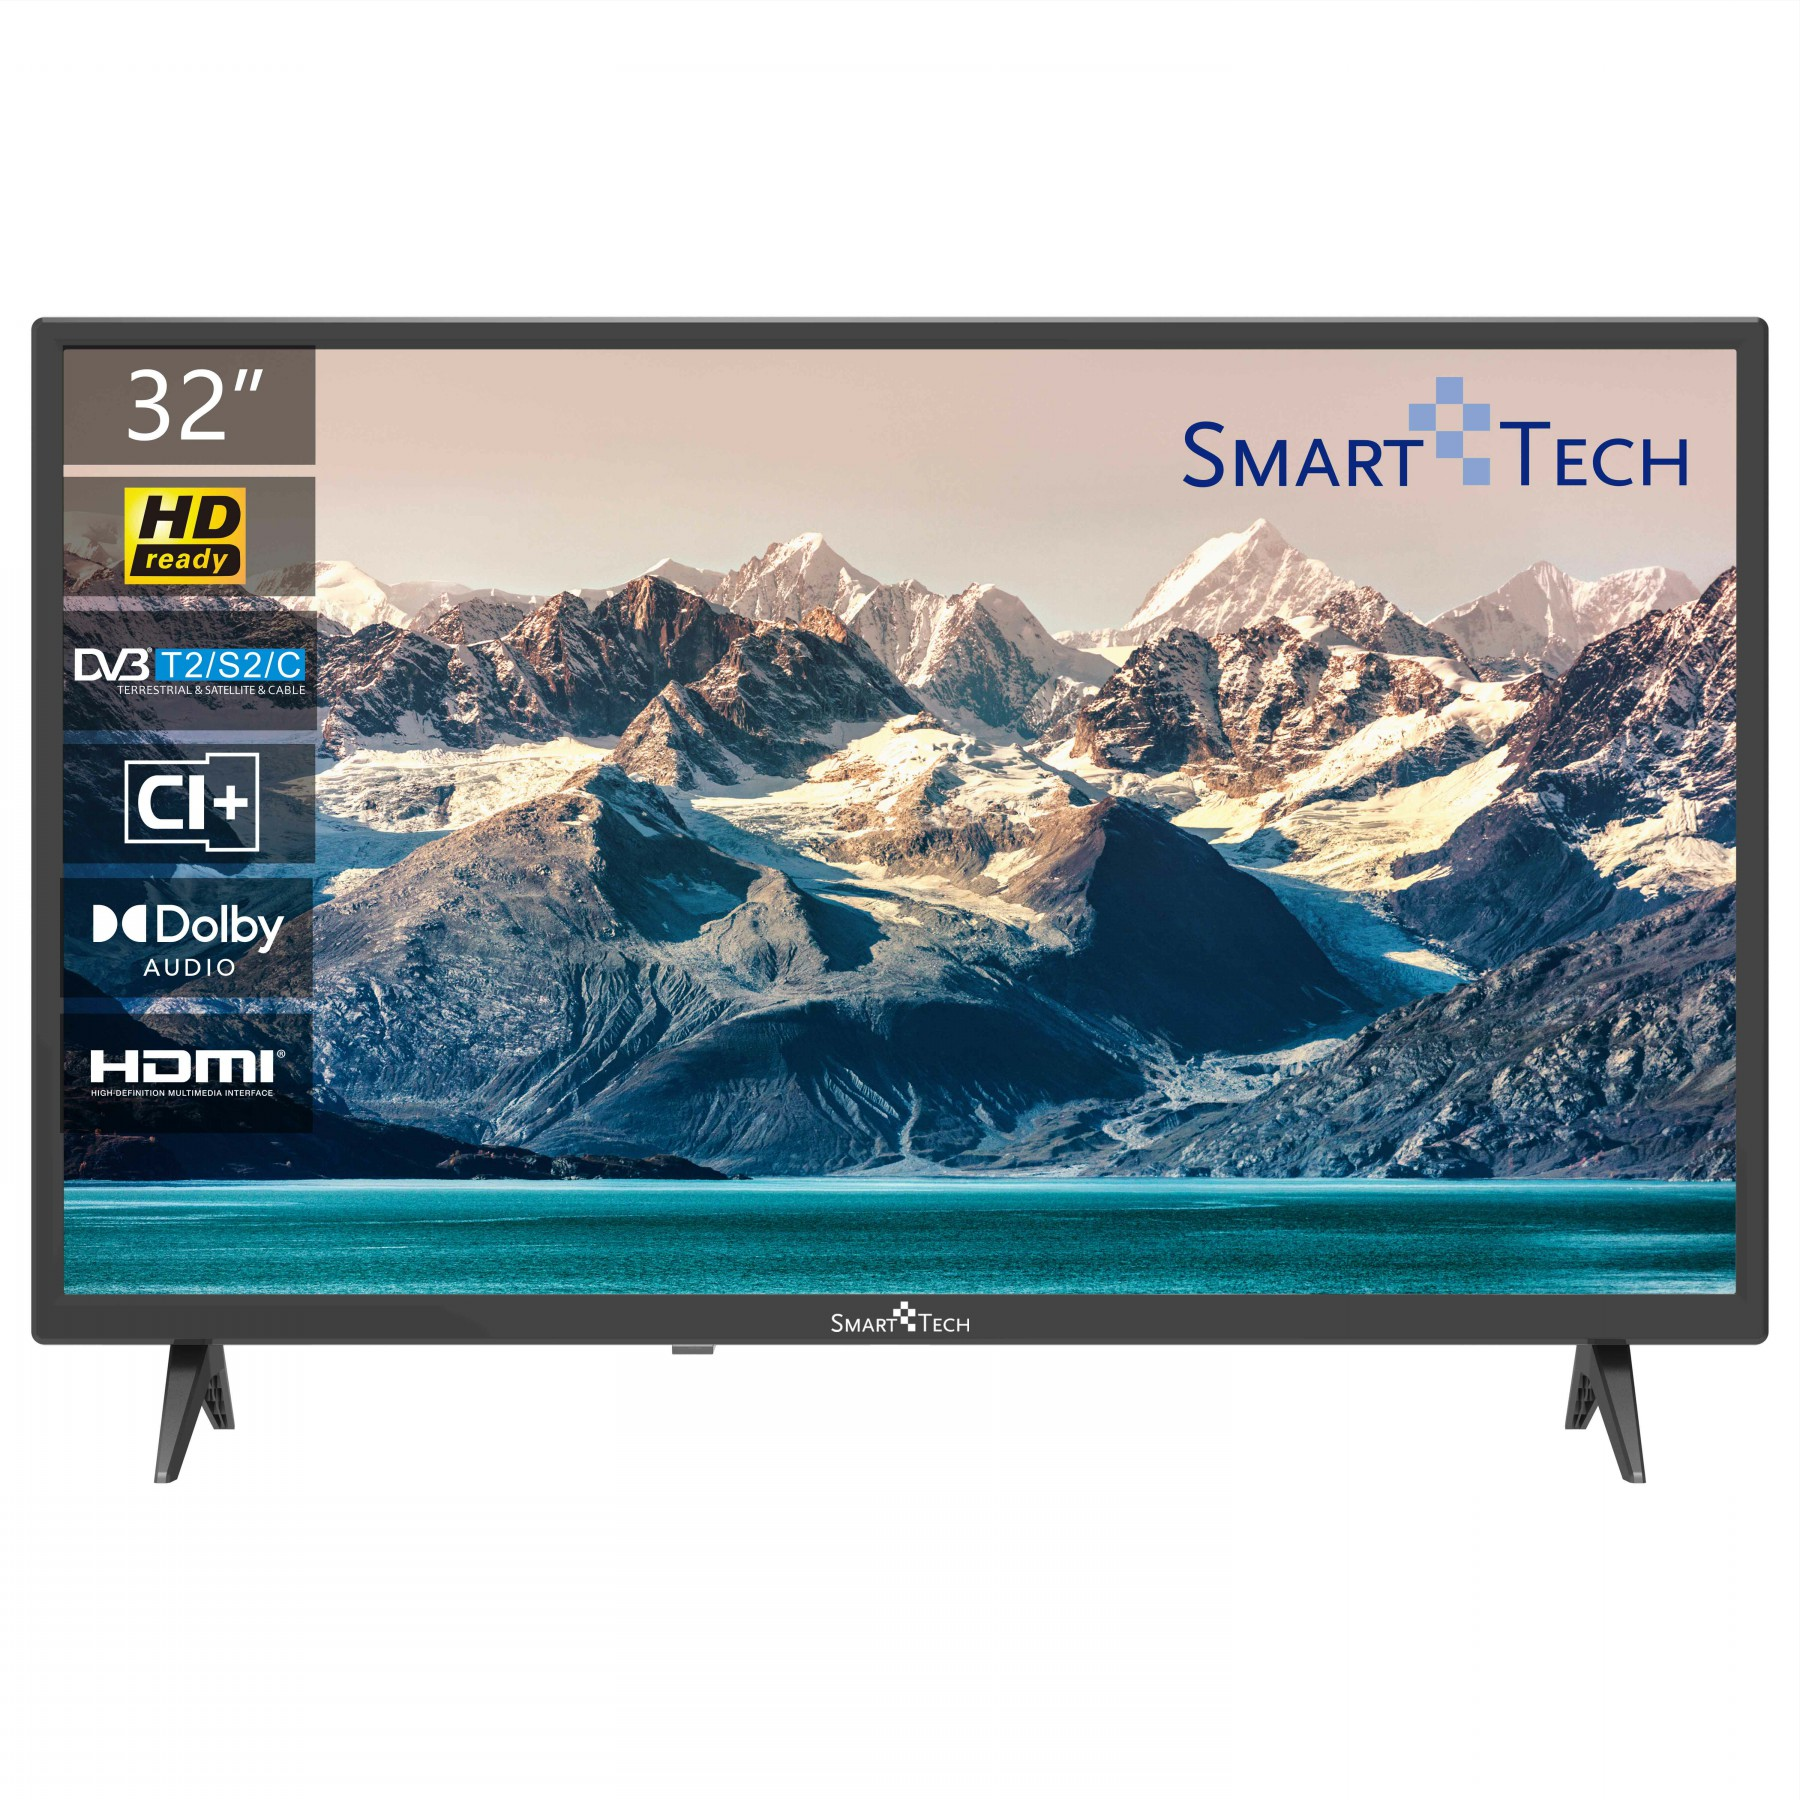 HD) TV Non-Smart 32HN10T2 / TV TECH 32 32 SMART cm, Zoll LED (Flat, 80 Zoll